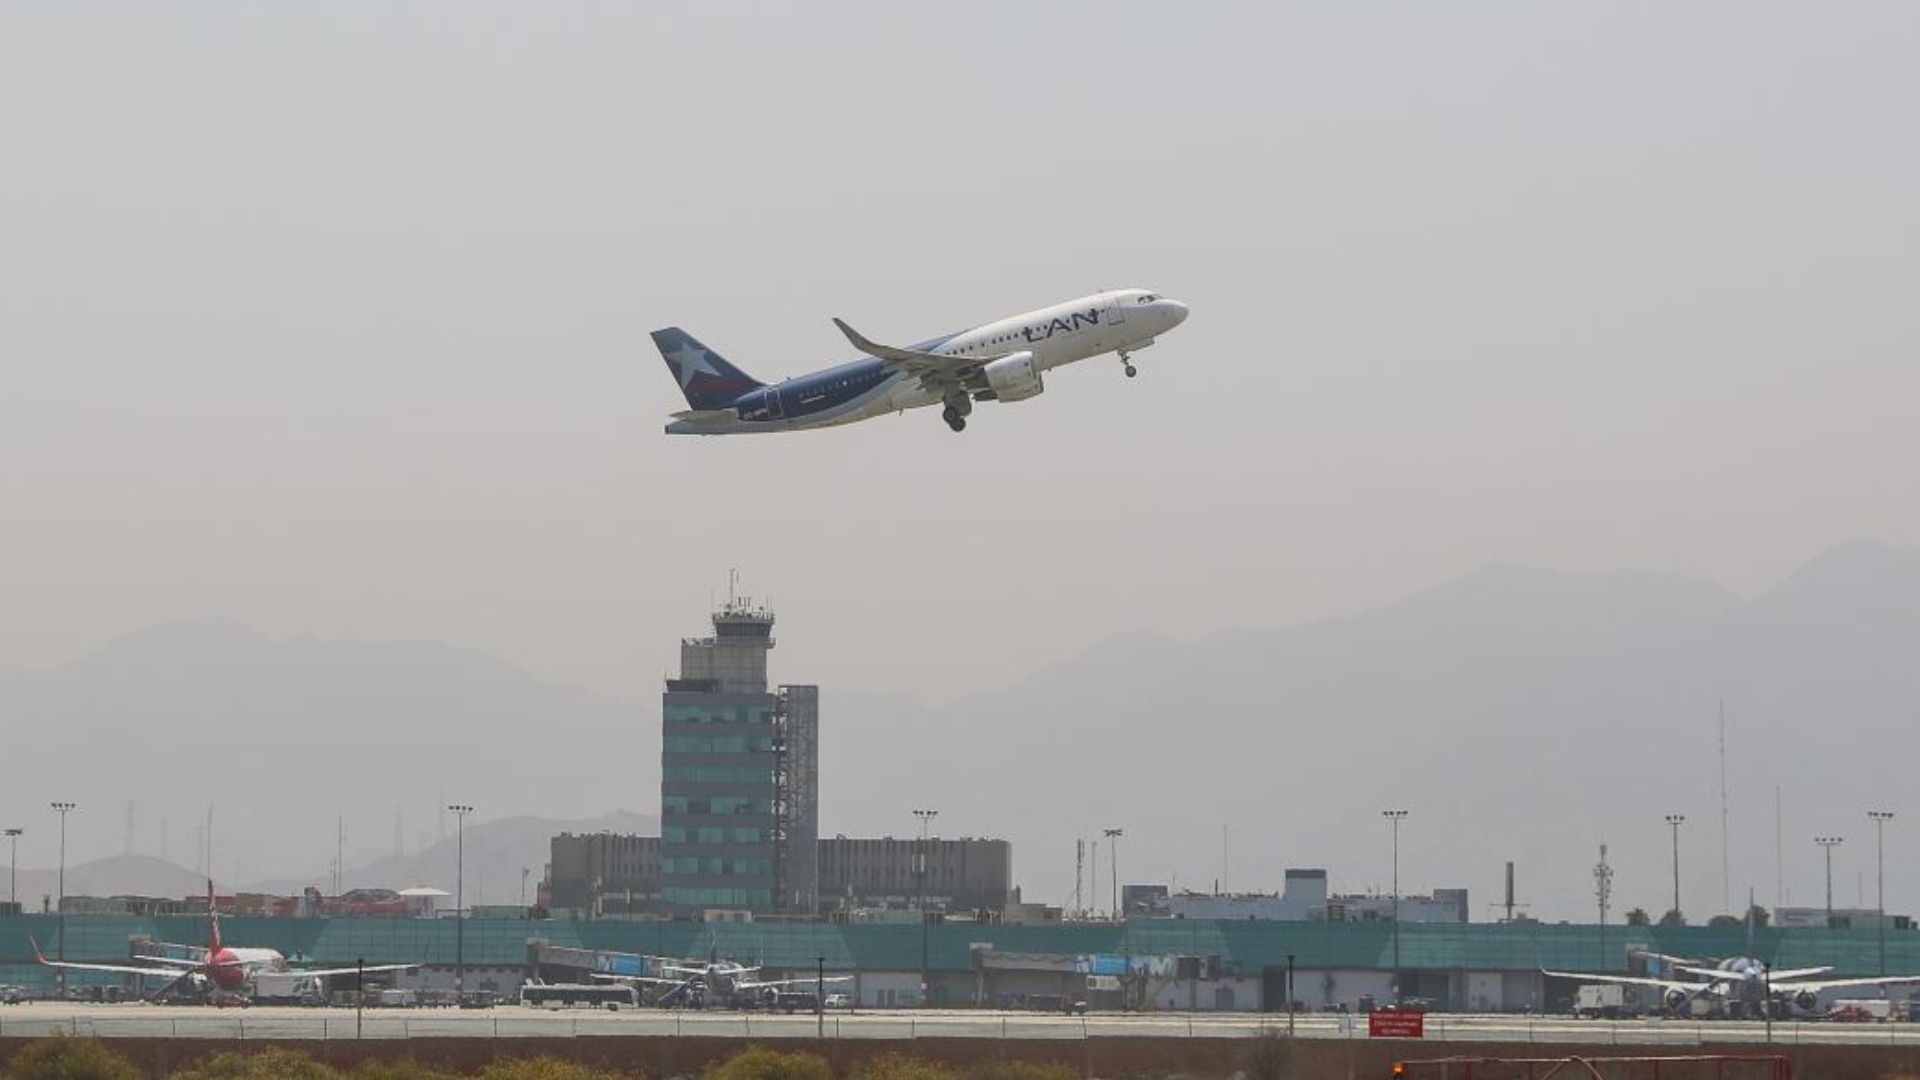 Aeropuerto Jorge Chávez: se reanuda vuelos luego de desperfecto técnico de una aeronave